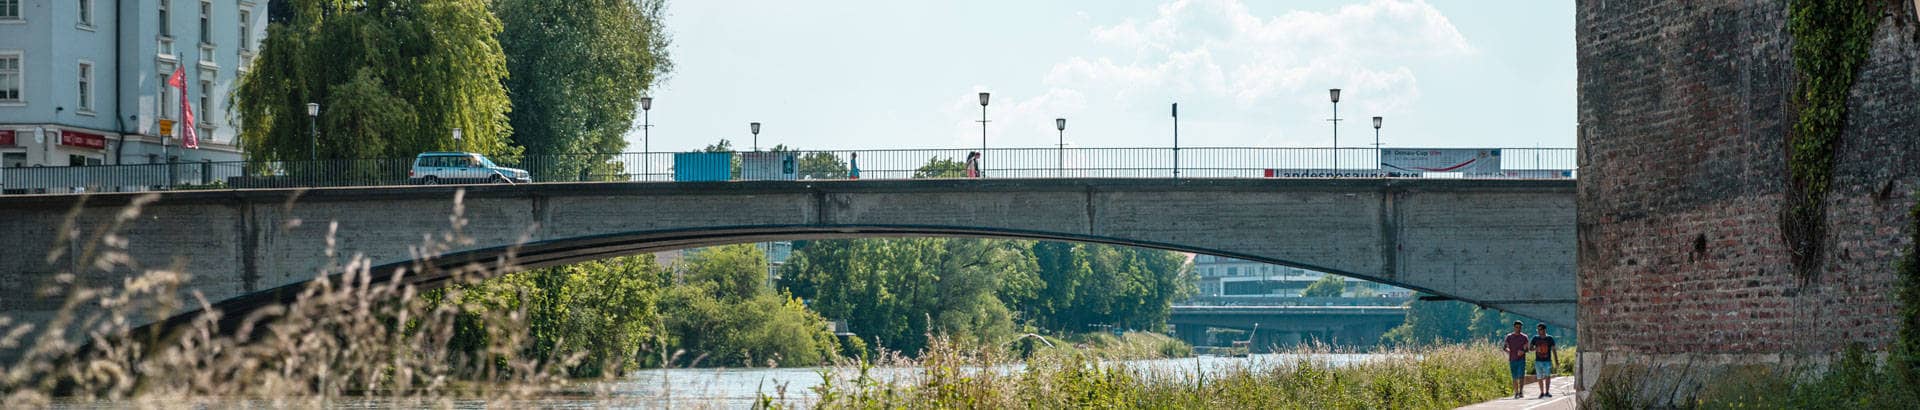 Die Donau und eine Autobrücke, die darüber führt